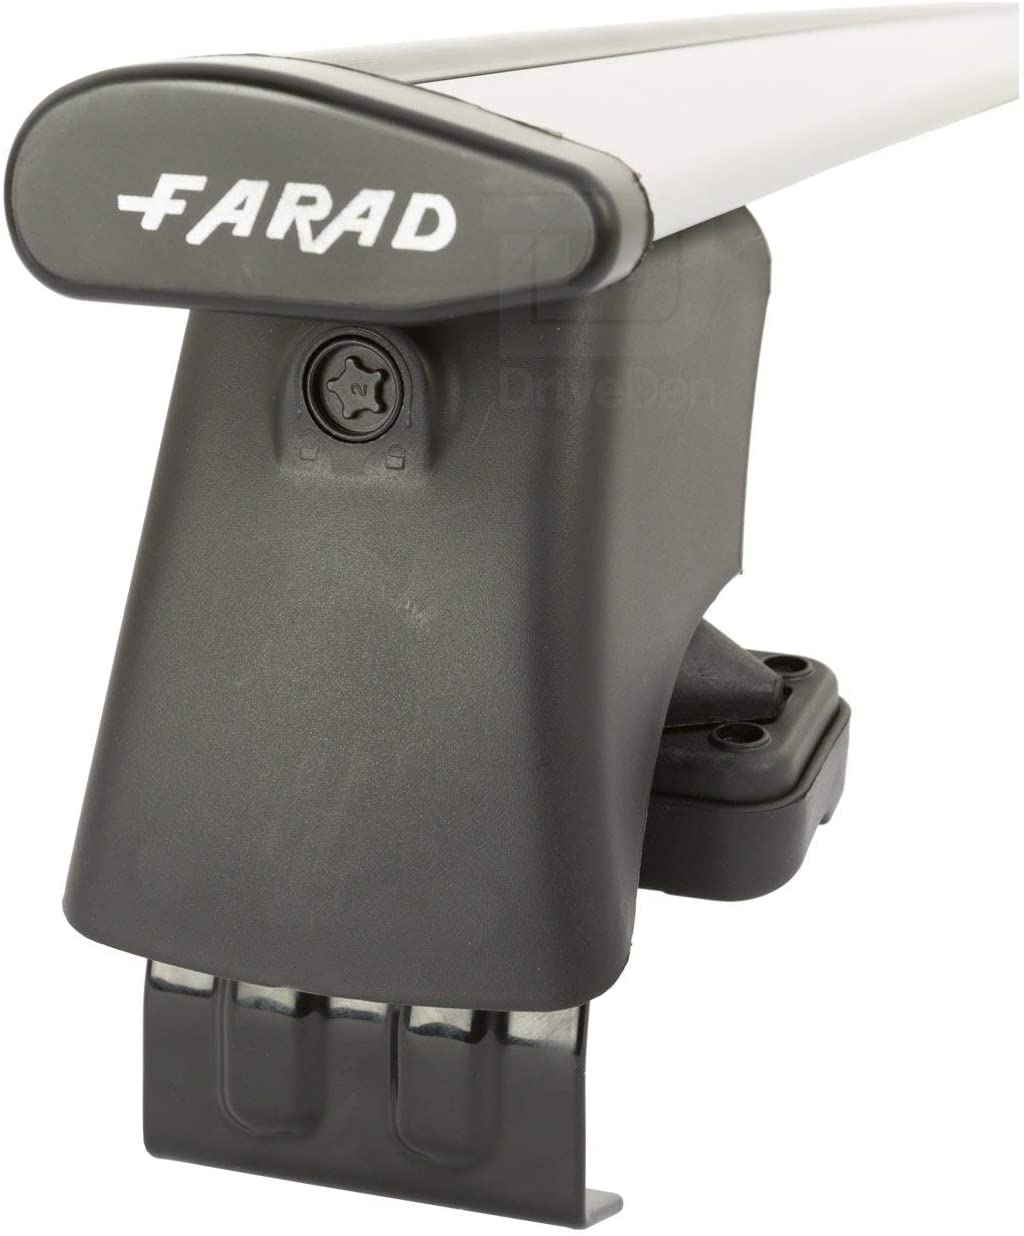 FARAD-Kit H2 per barre portatutto - Fiat Punto Evo 2009-2012 (senza corrimano)